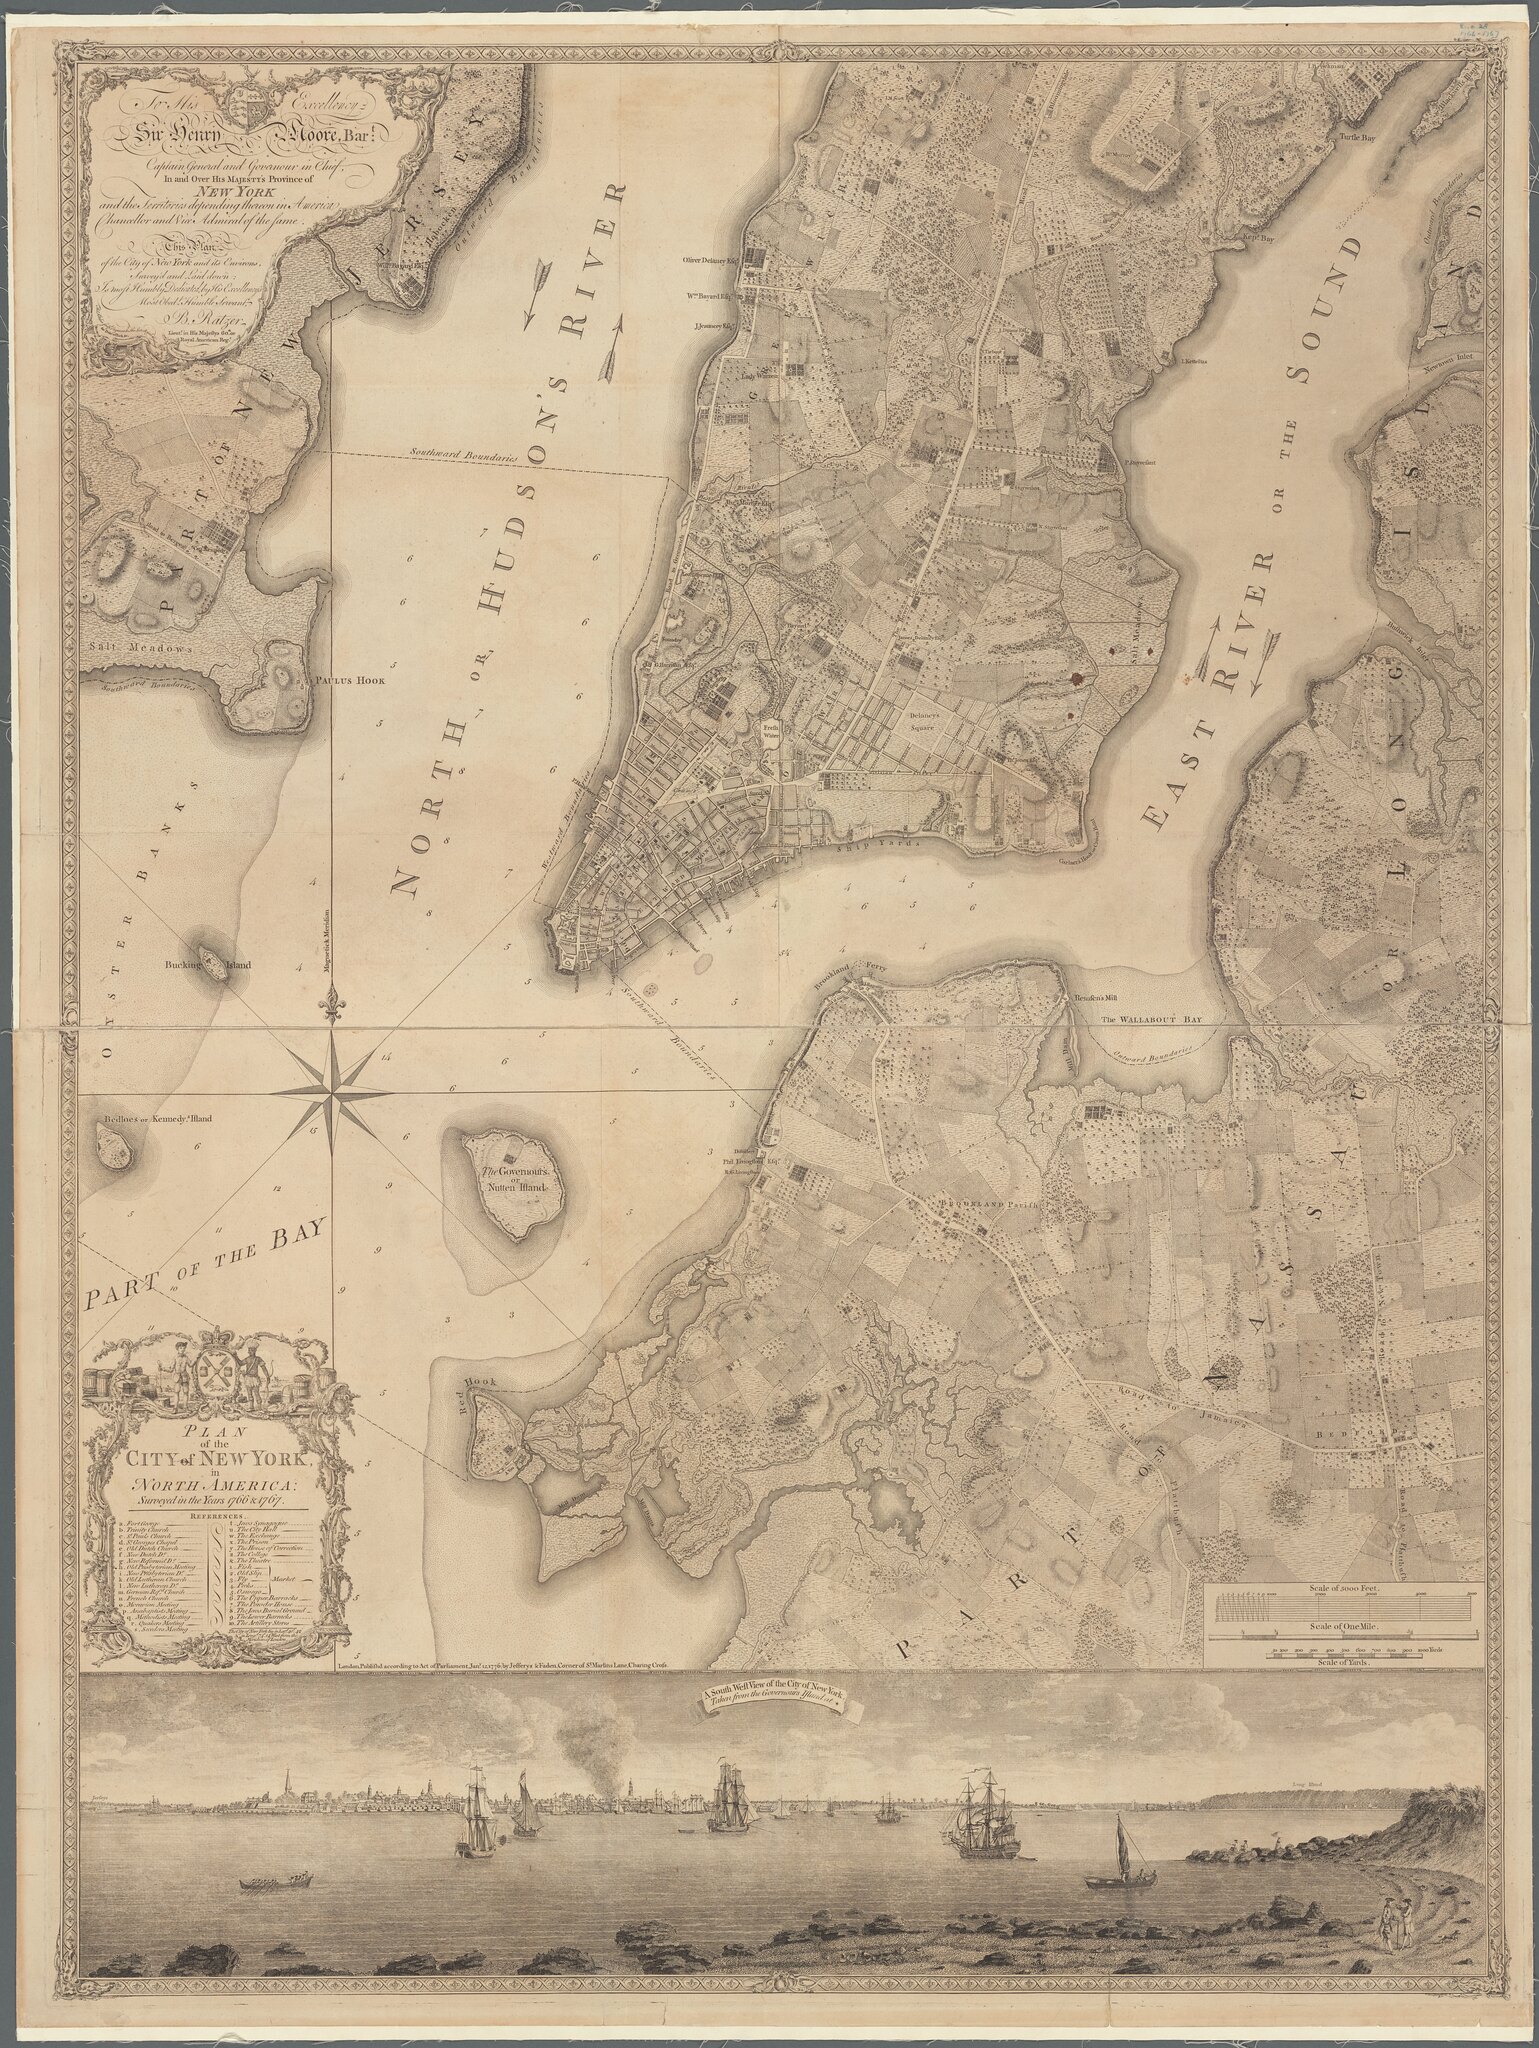 Bernard Ratzer Map surveyed 1767 NYPL higher res